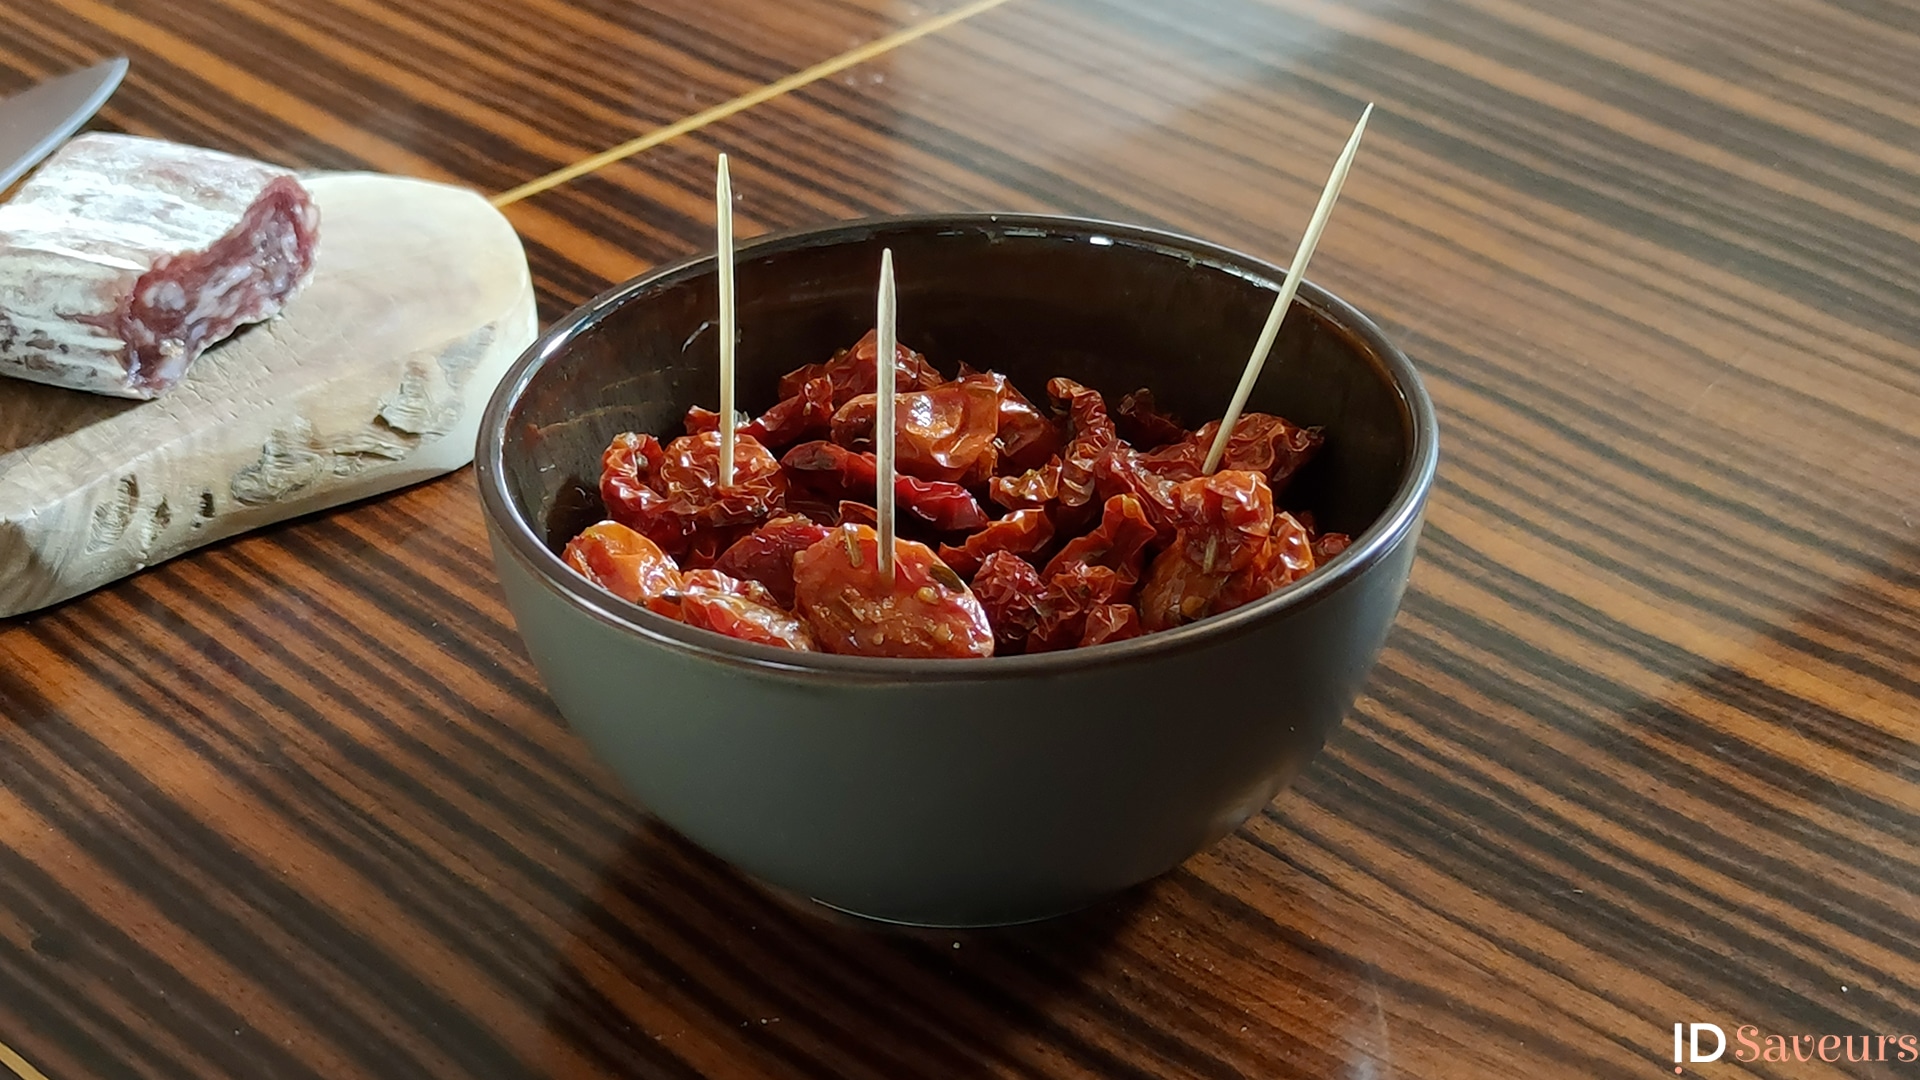 Tomates cerises séchées et confites - Recettes de cuisine Ôdélices